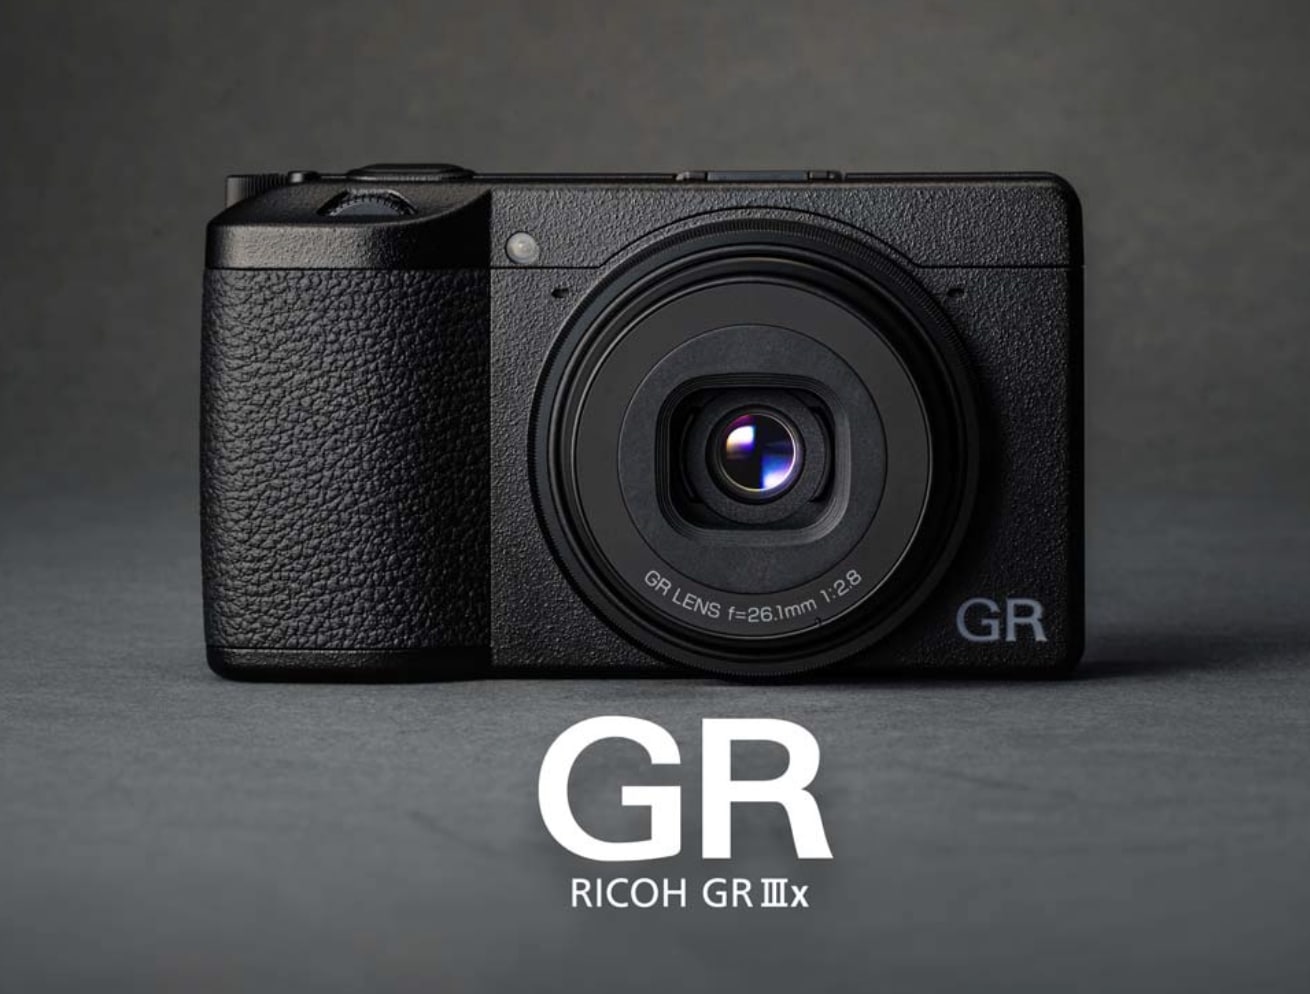 Ricoh GR IIIx ra mắt với ống kính tiêu cự mới và cảm biến ảnh cải tiến